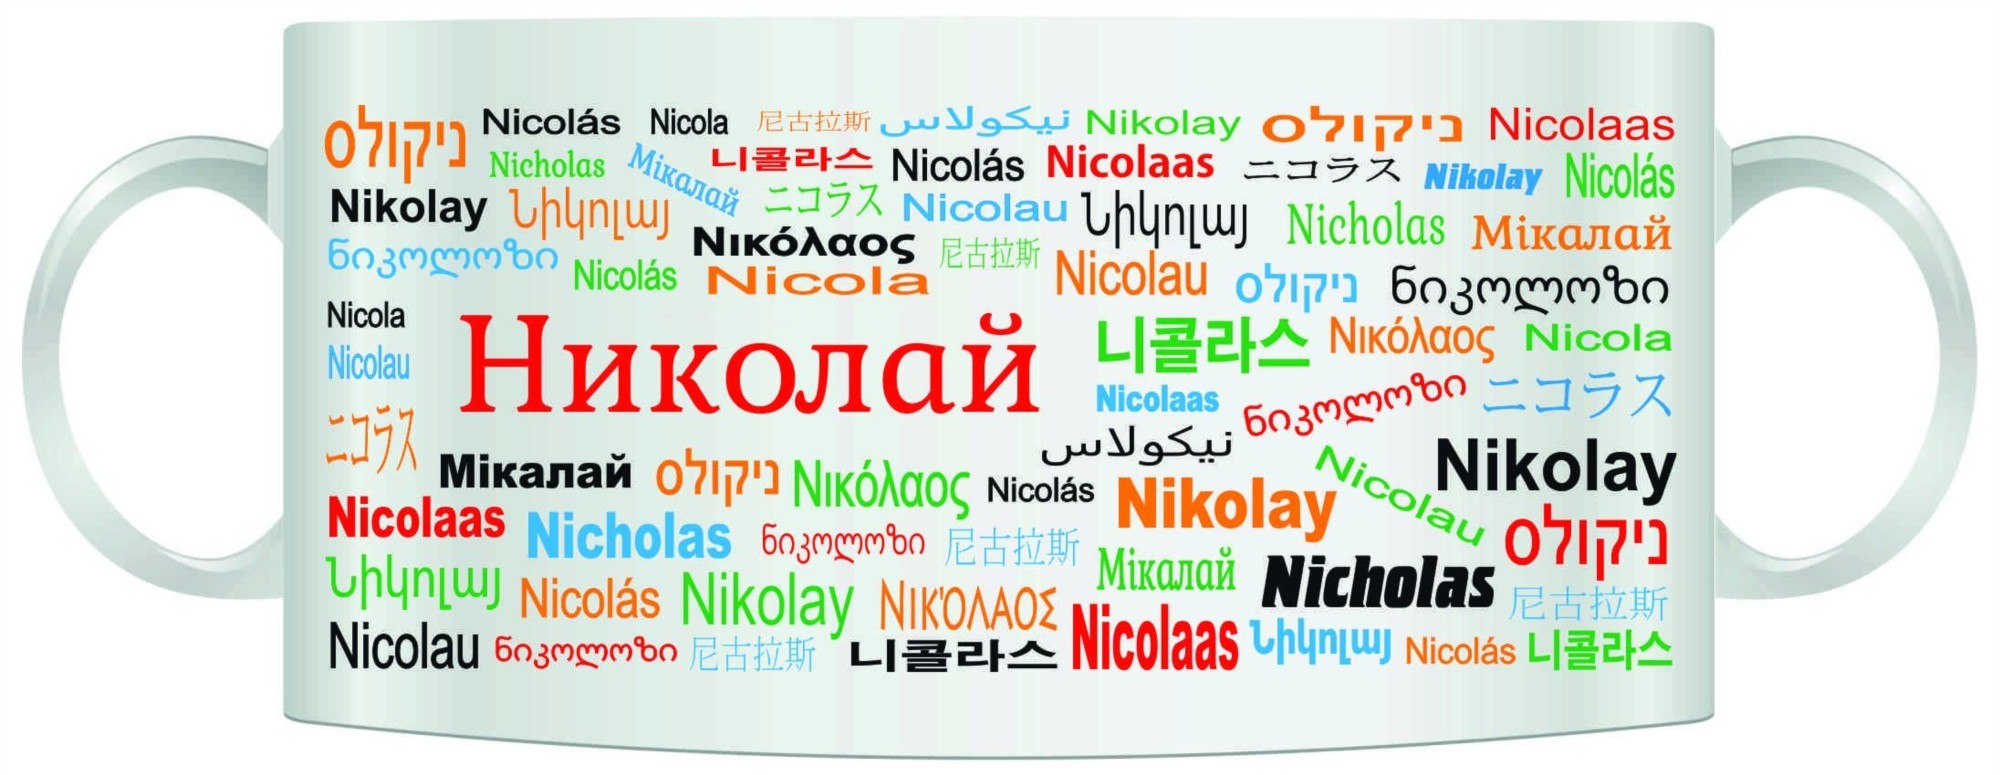 Имя Николай на разных языках